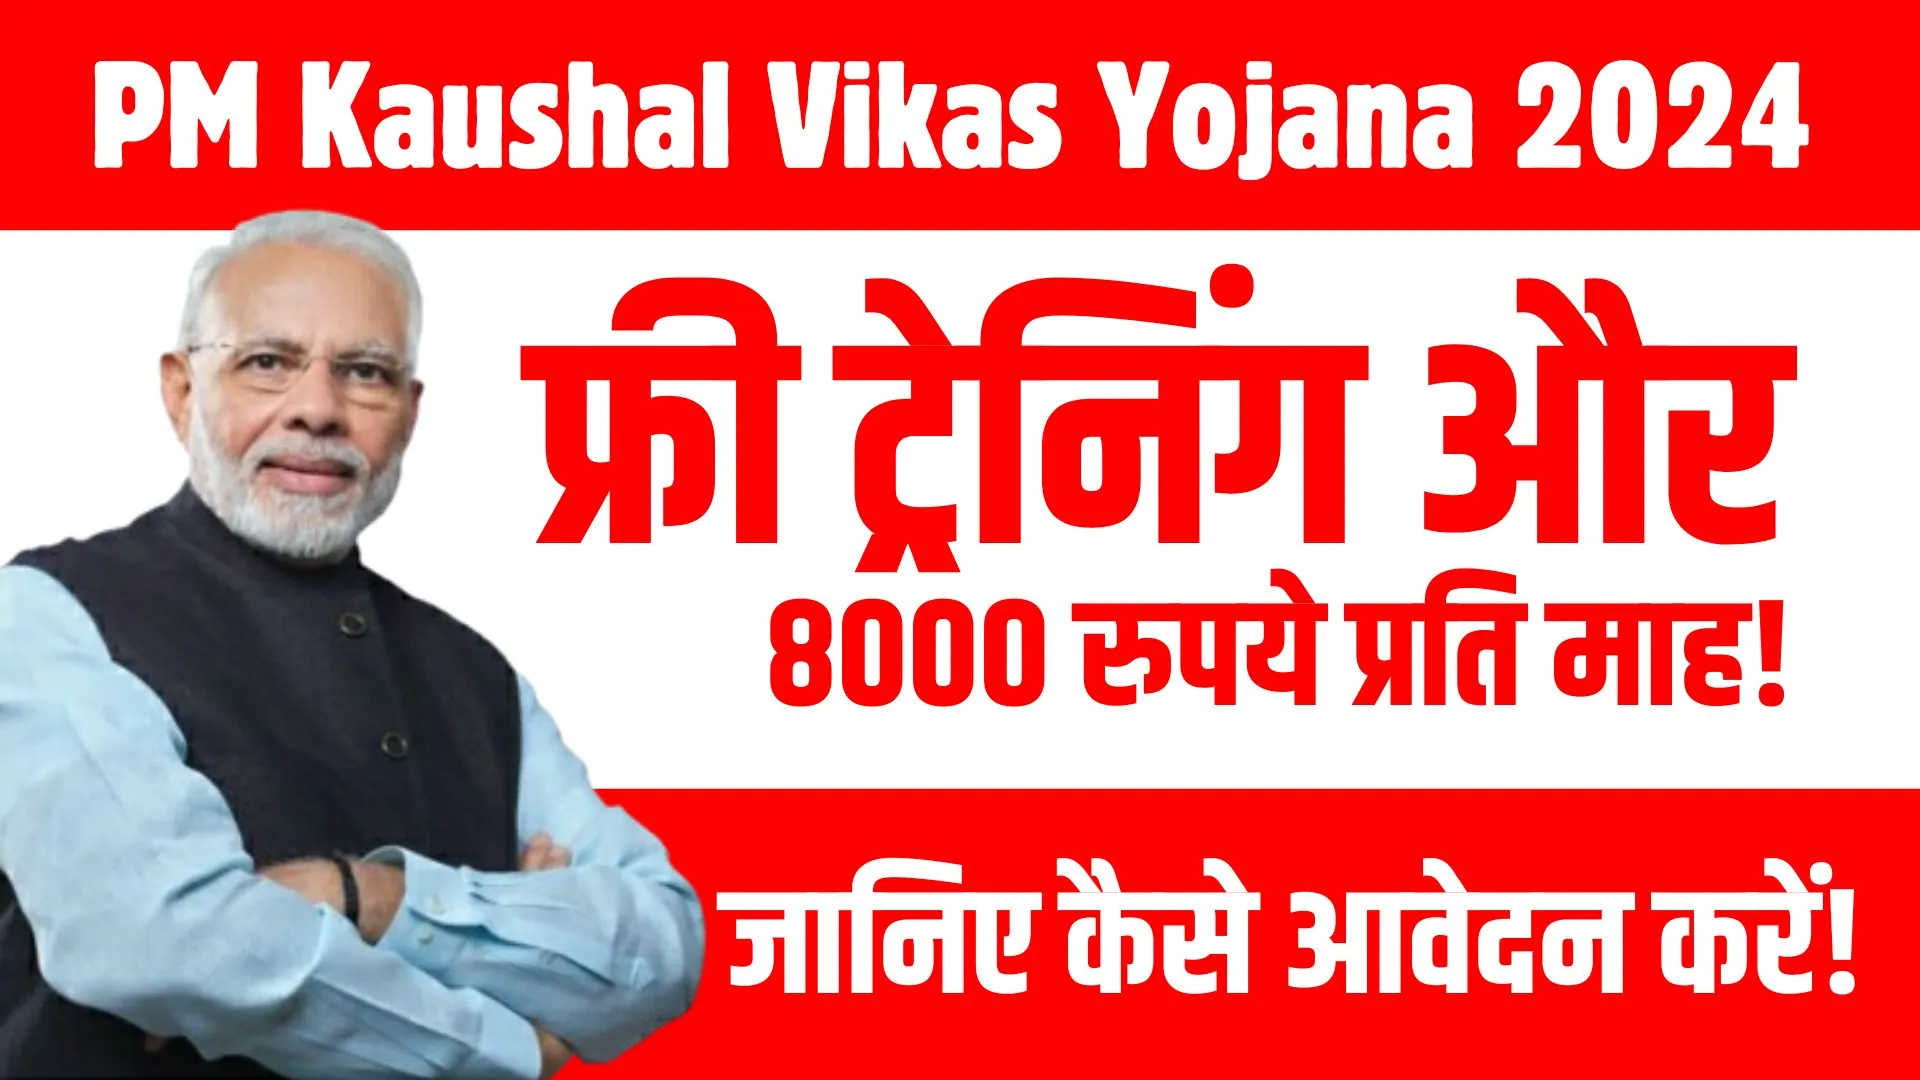 PM Kaushal Vikas Yojana 2024 (1)